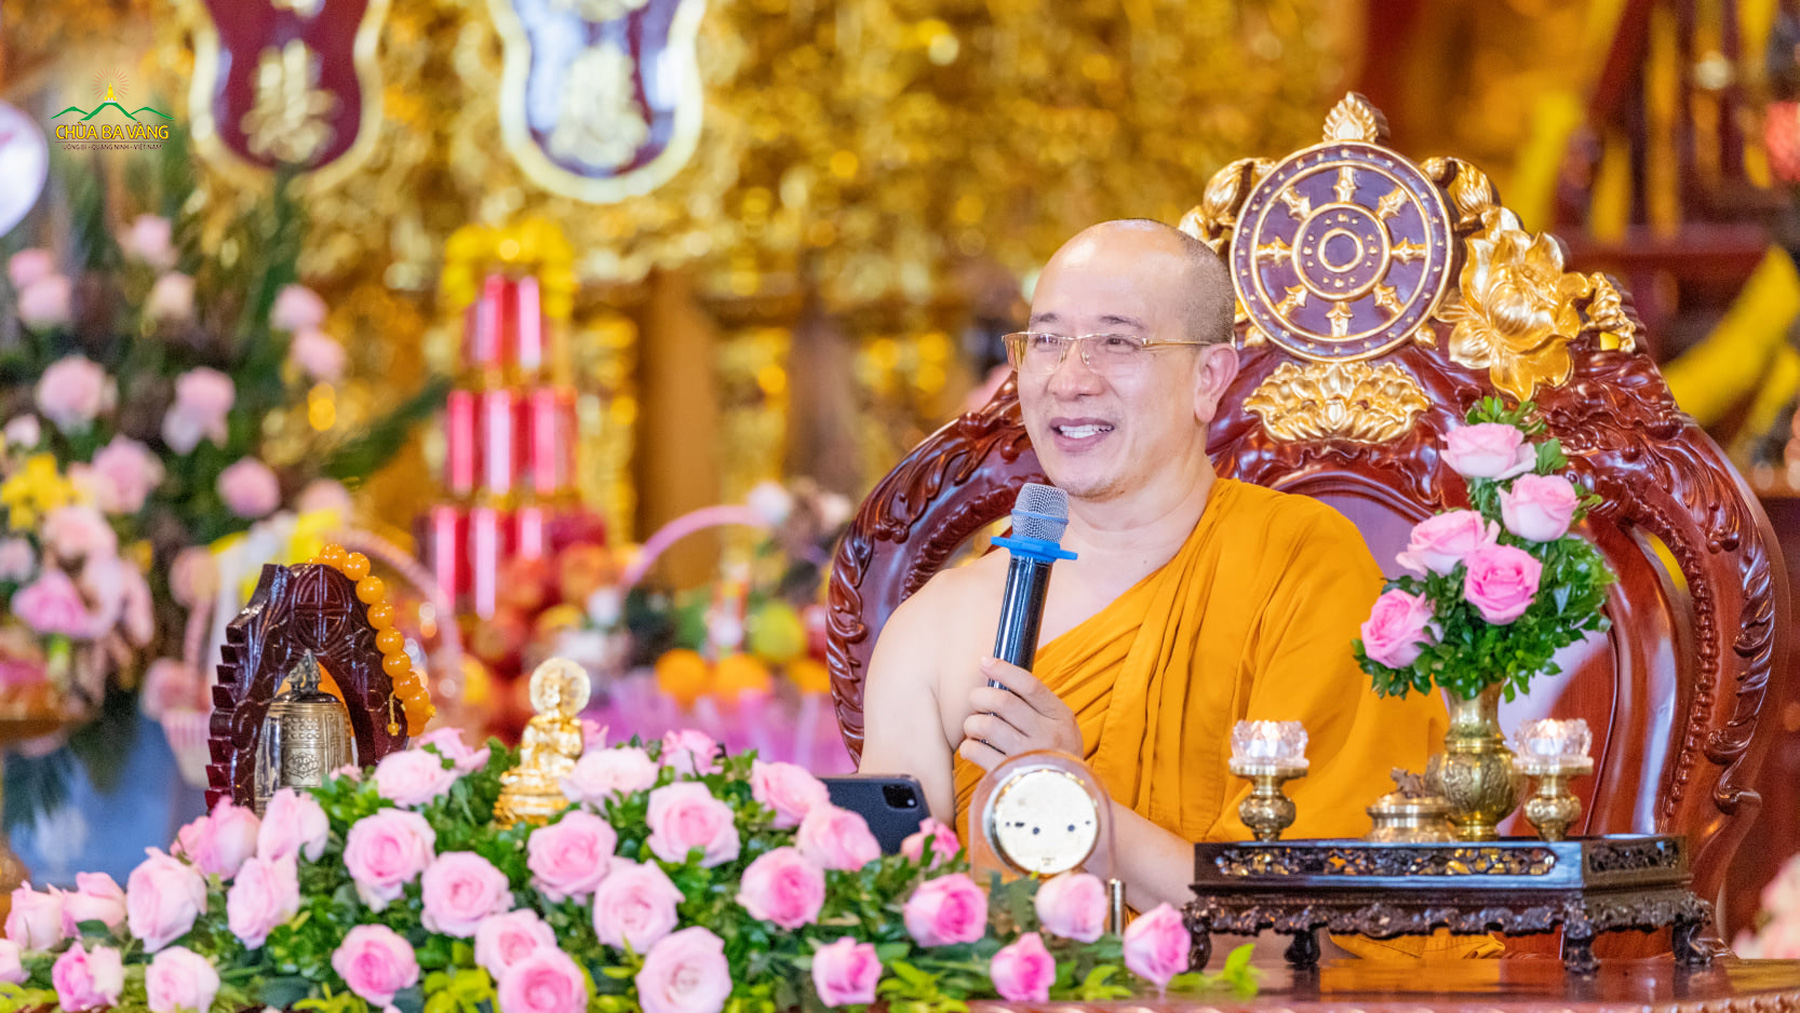 Nhân kỷ niệm ngày Gia đình Việt Nam, thể theo lời thỉnh cầu của Câu lạc bộ Tình yêu - Hôn nhân - Gia đình Phật tử chùa Ba Vàng, Sư Phụ đã truyền trao cho các Phật tử Pháp thoại “Phật Pháp và hạnh phúc gia đình”